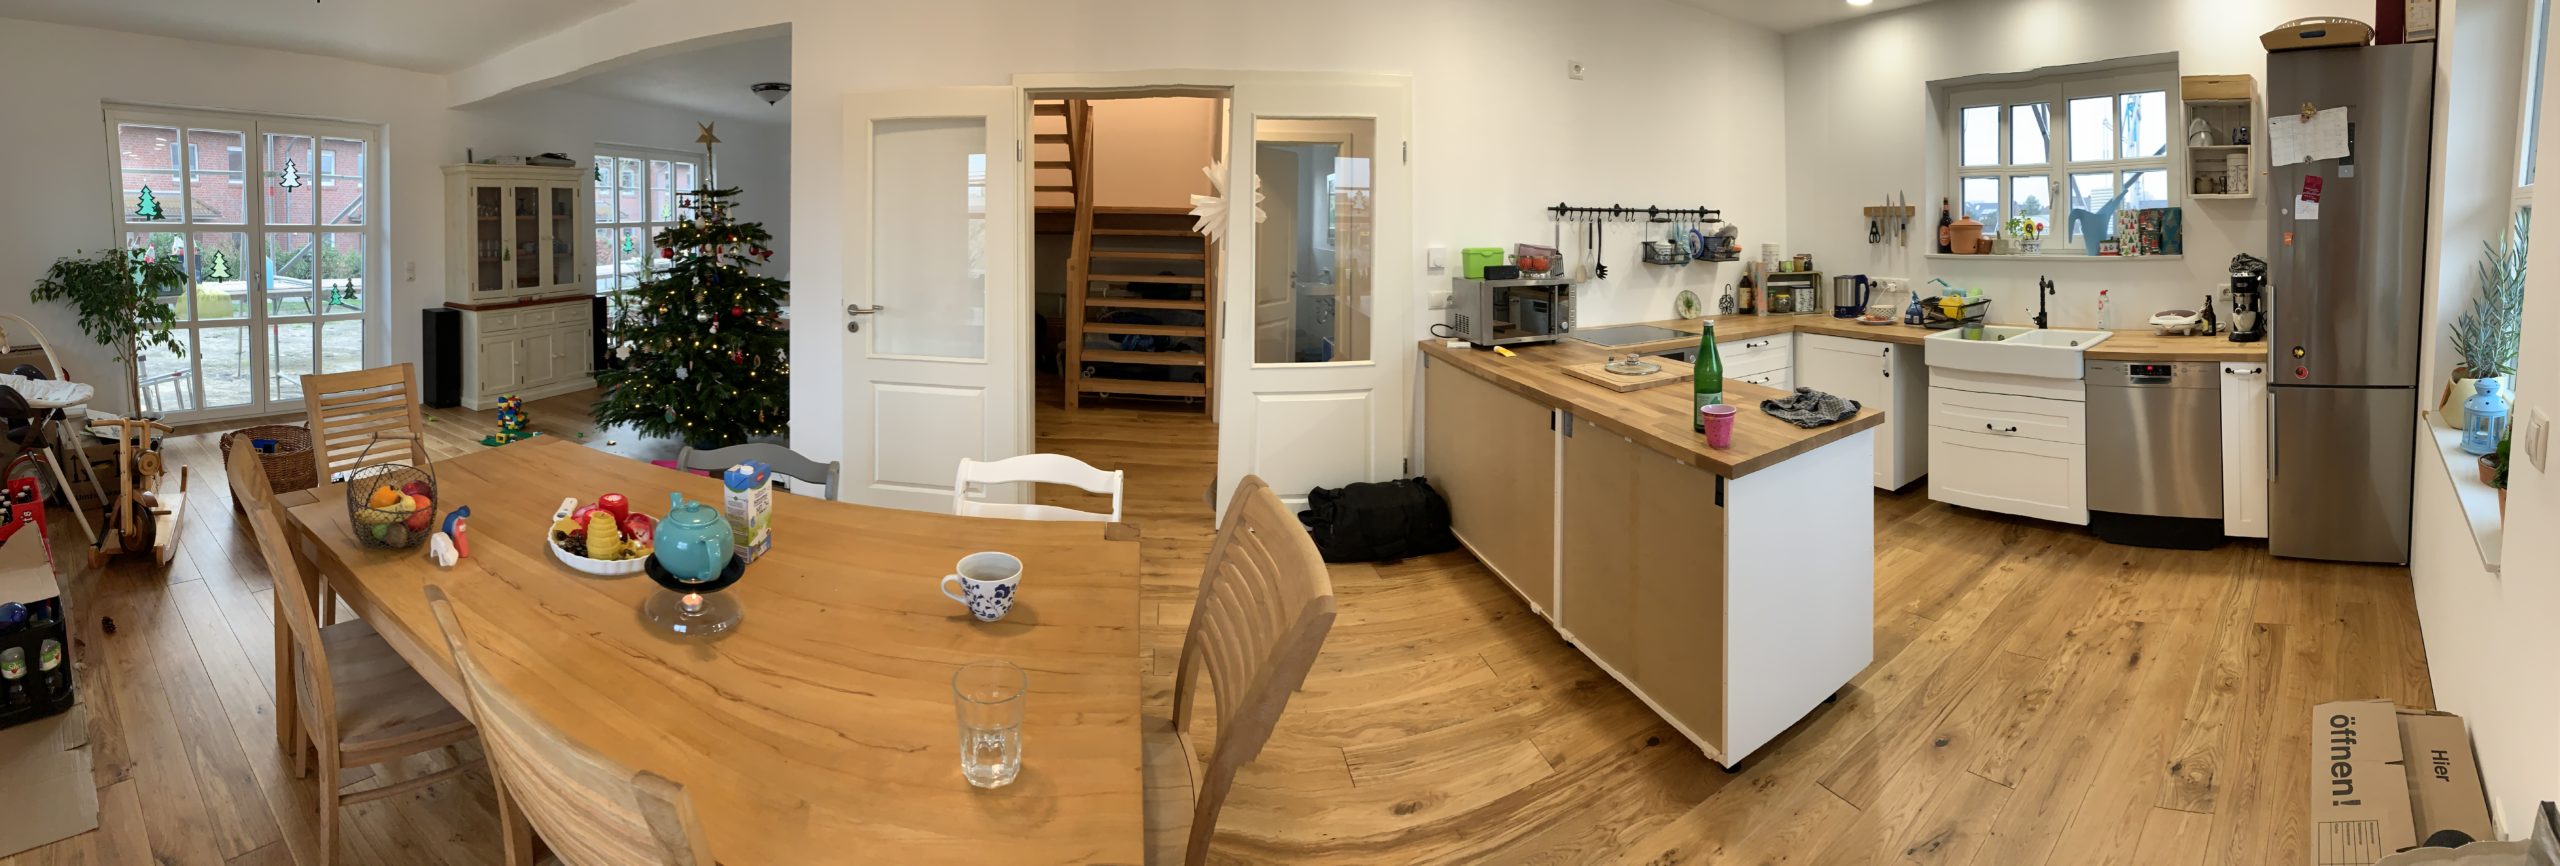 unser Holzboden in Küche, Wohn-Essbereich und Diele